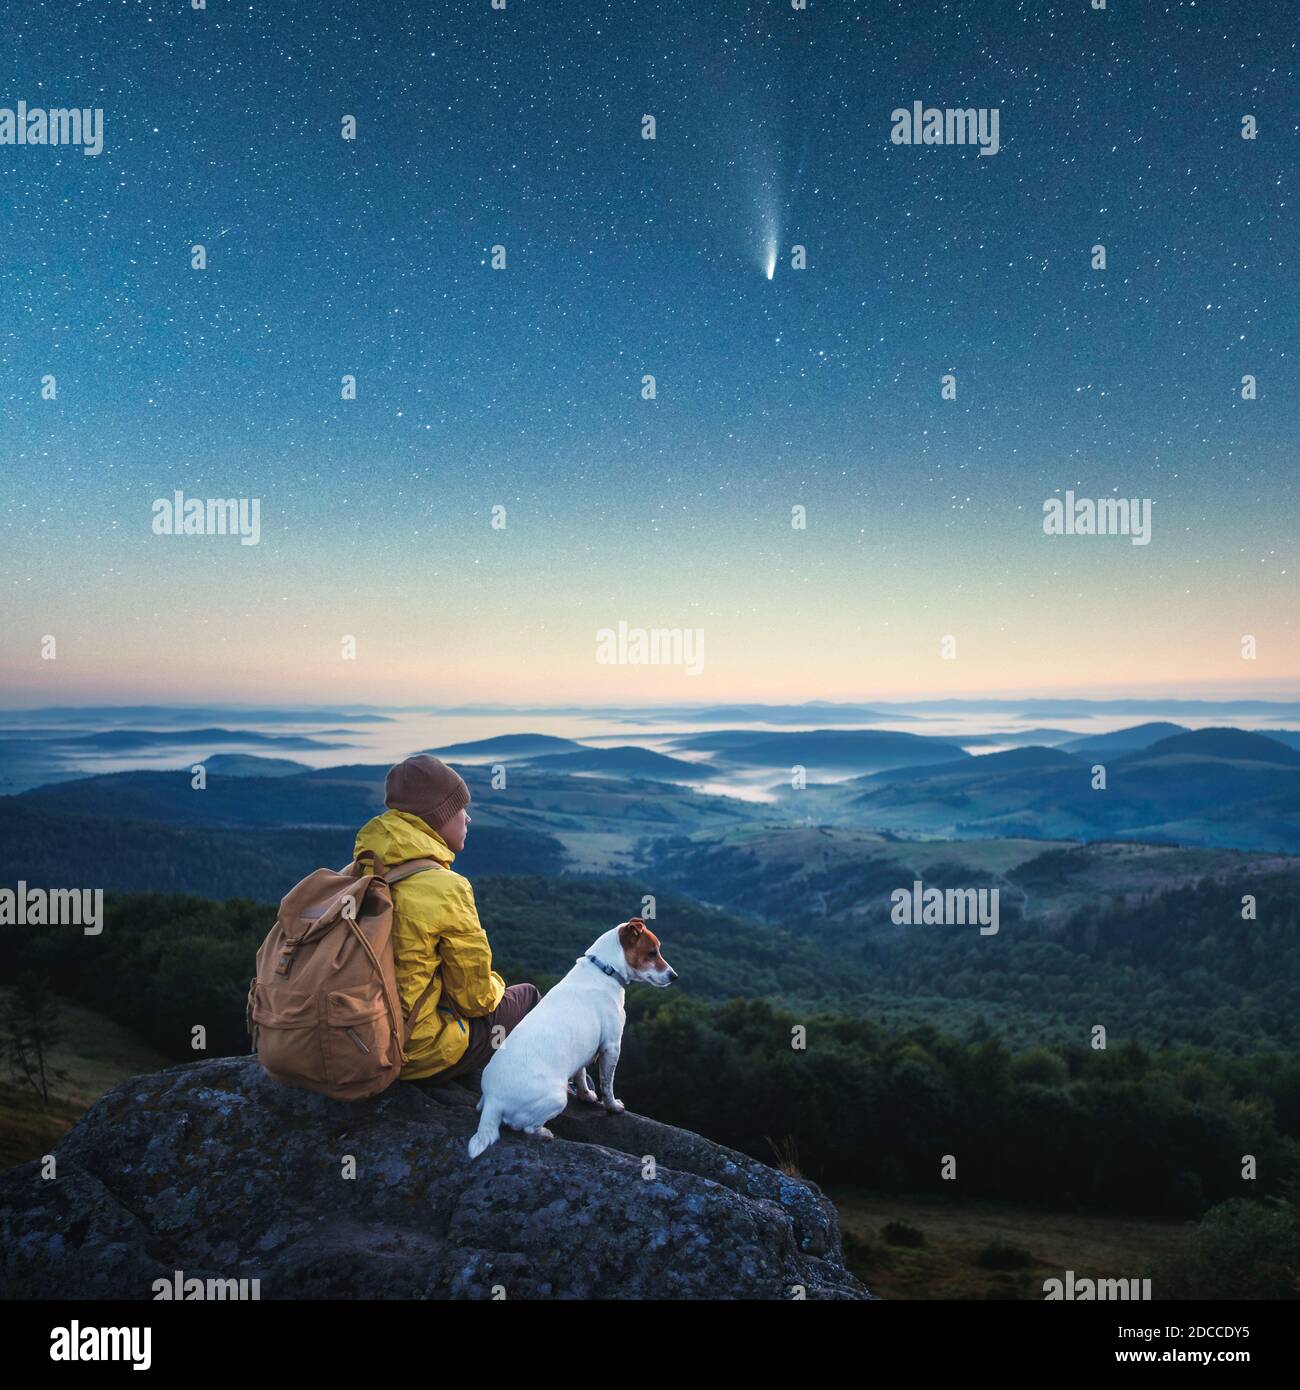 Solo turista seduto sul bordo della scogliera con cane bianco sullo sfondo di una montagna incredibile con cielo stellato notte. Fotografia di paesaggio Foto Stock